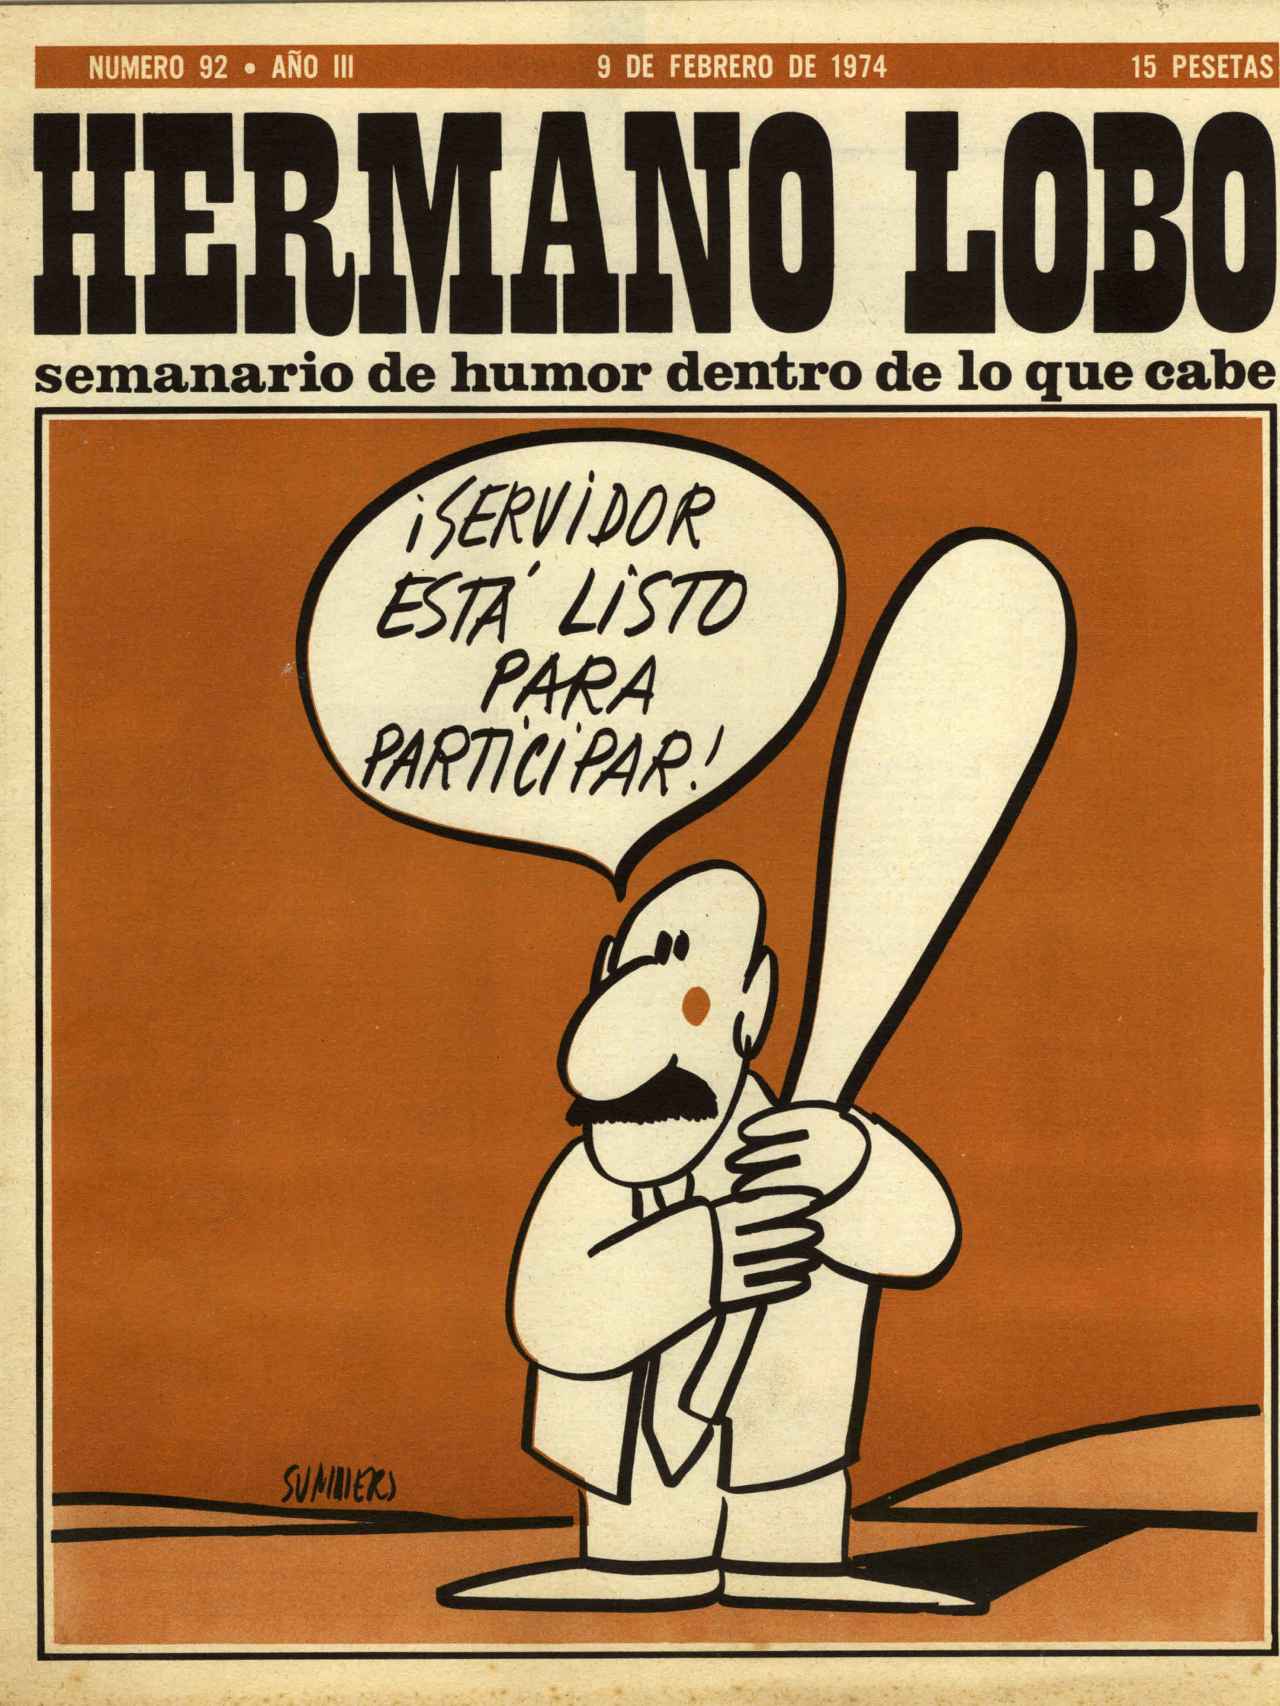 Portada de la revista ‘Hermano Lobo’, con fecha de 9 de febrero de 1974.